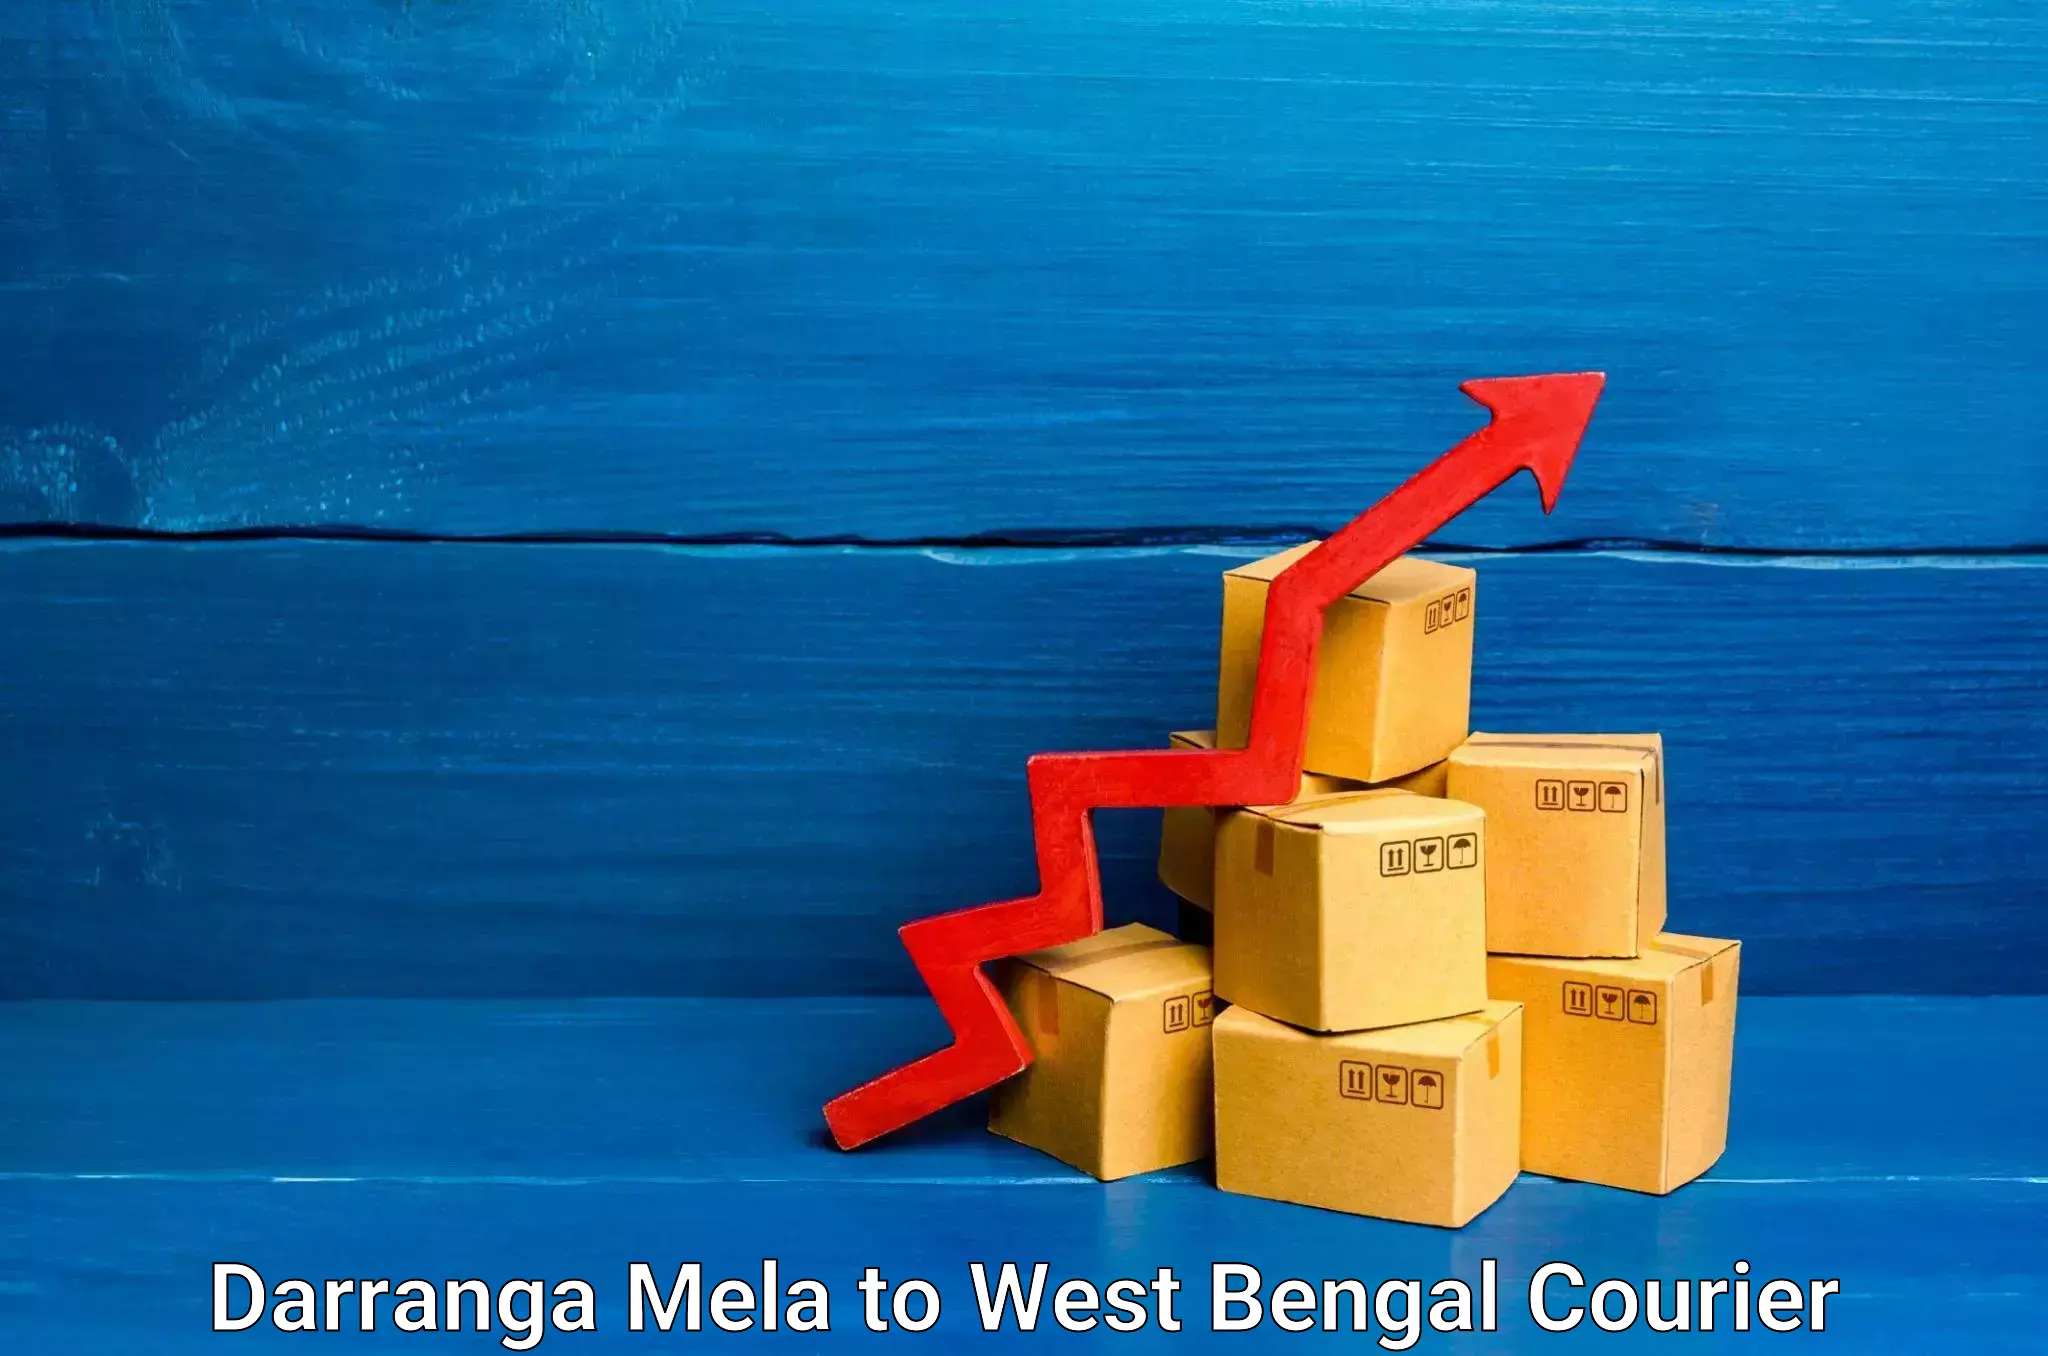 Cargo courier service in Darranga Mela to Sehara Bazar